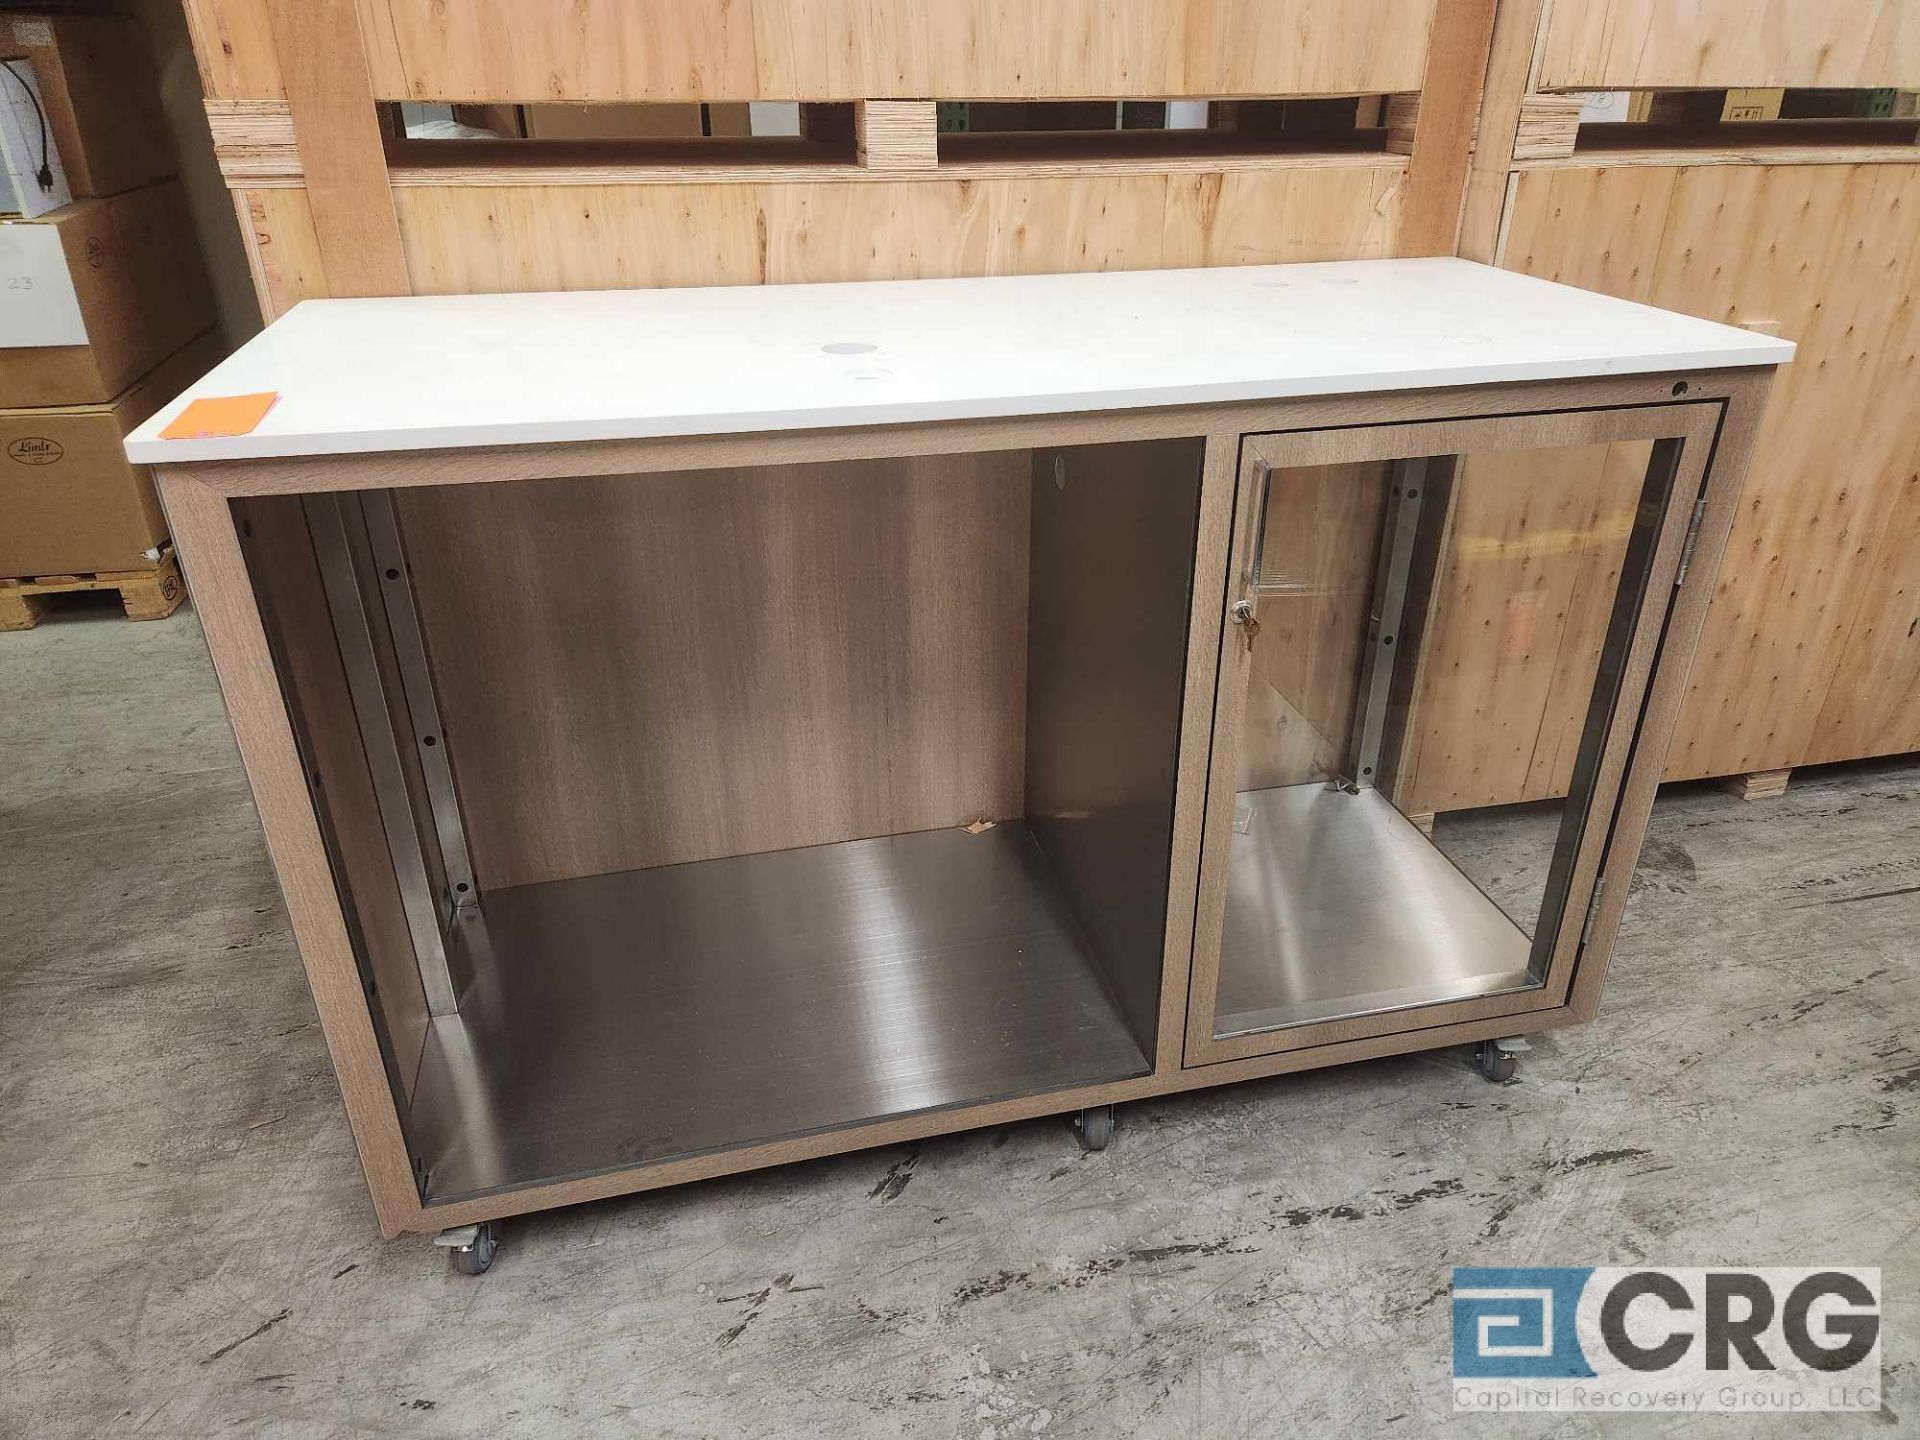 Ramler custom welded stainless steel framed portable bar serving stations